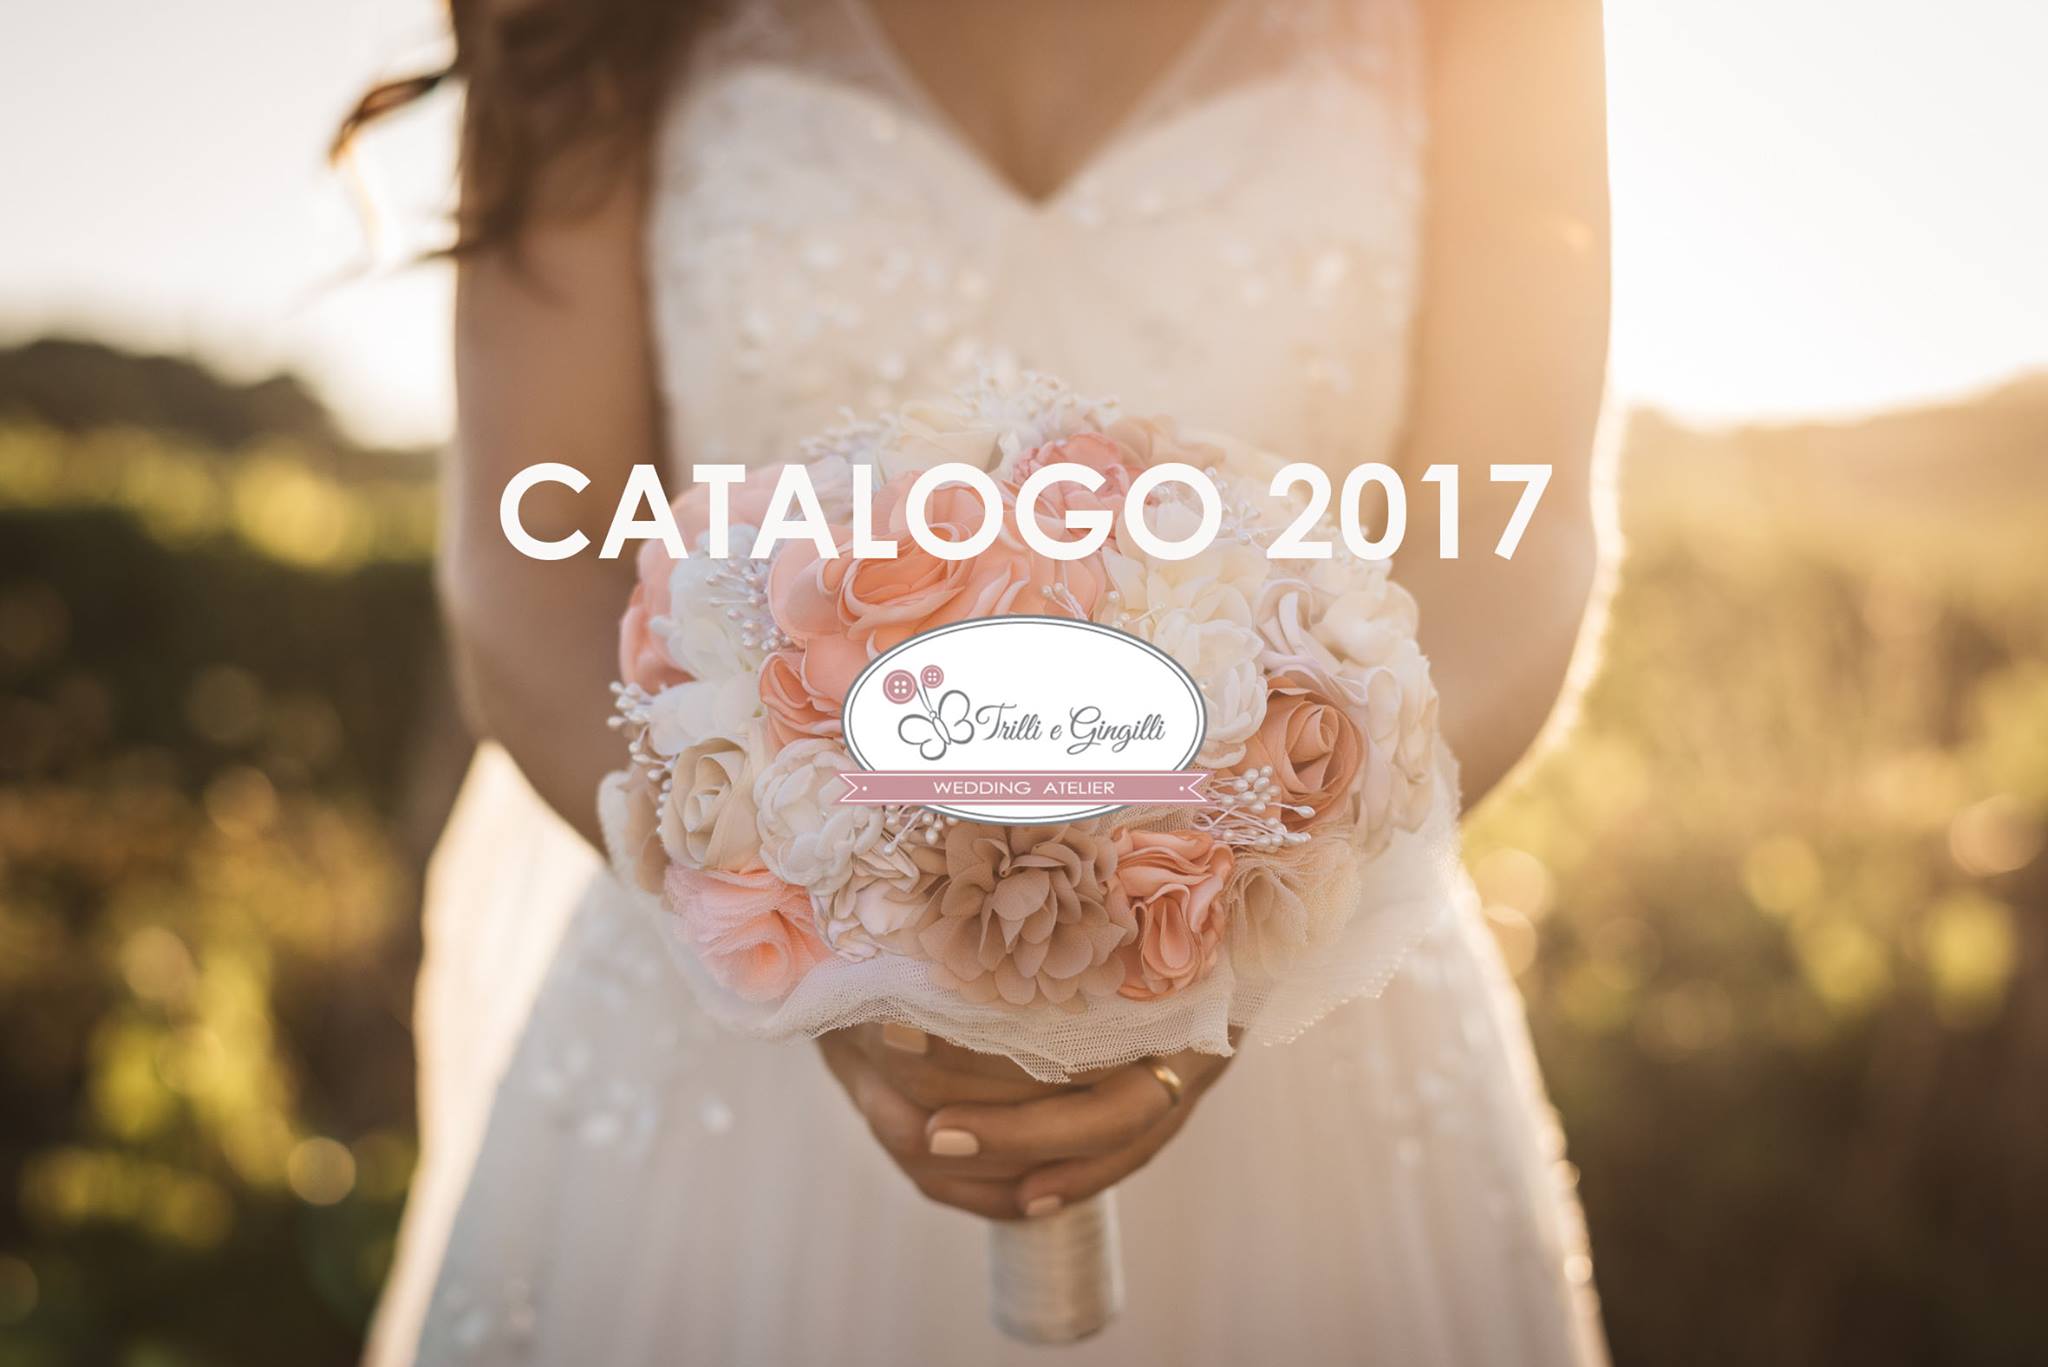 bouquet sposa 2017